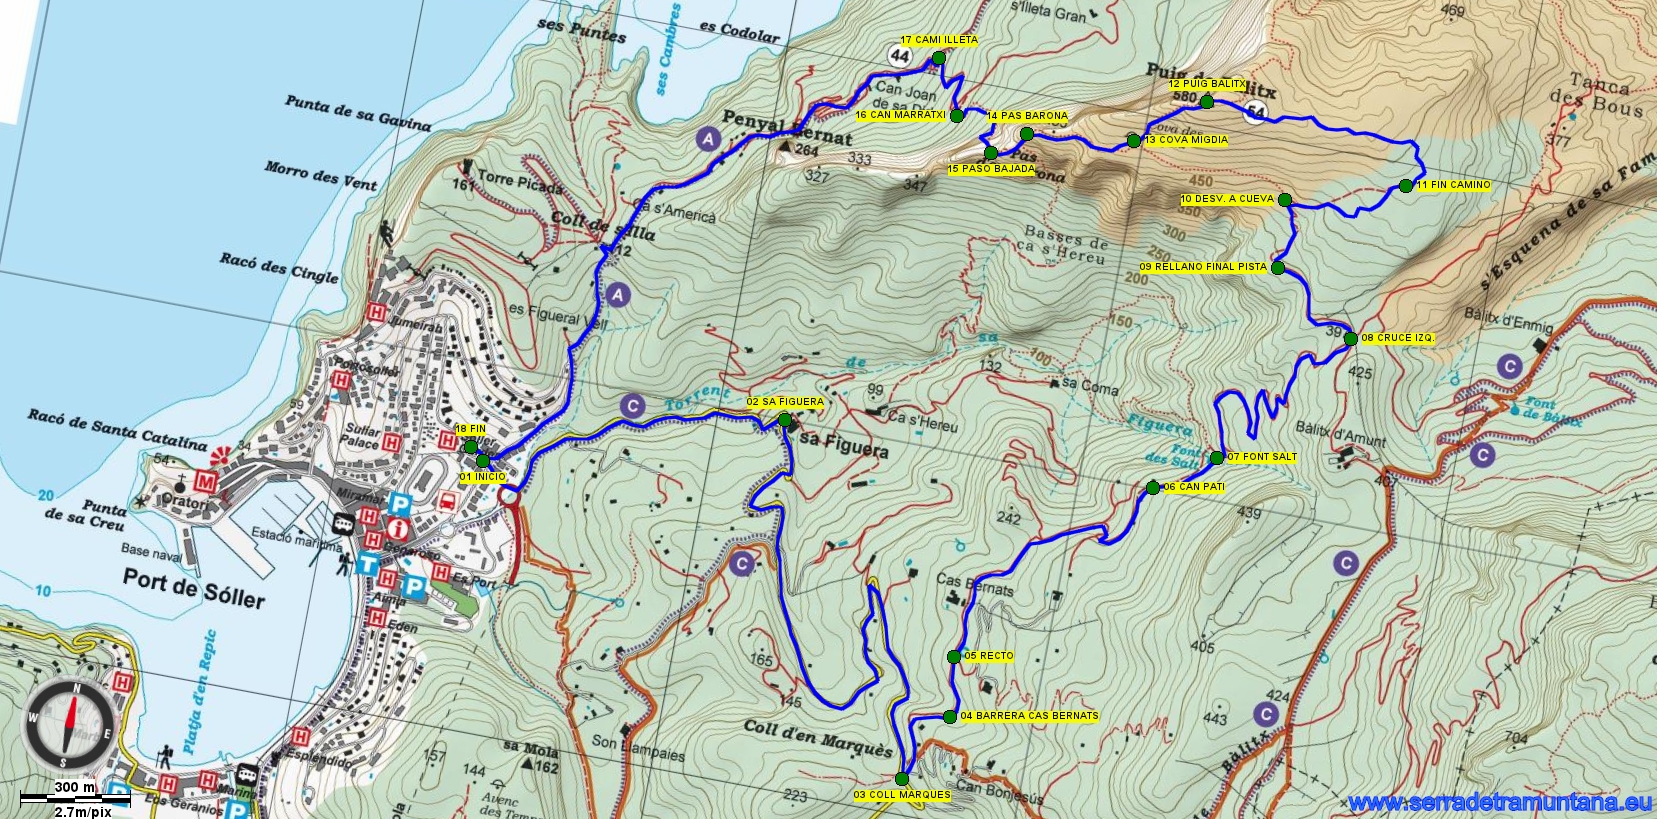 Recorte del Mapa Alpina con el trazado de la ruta y los puntos de referencia más importantes